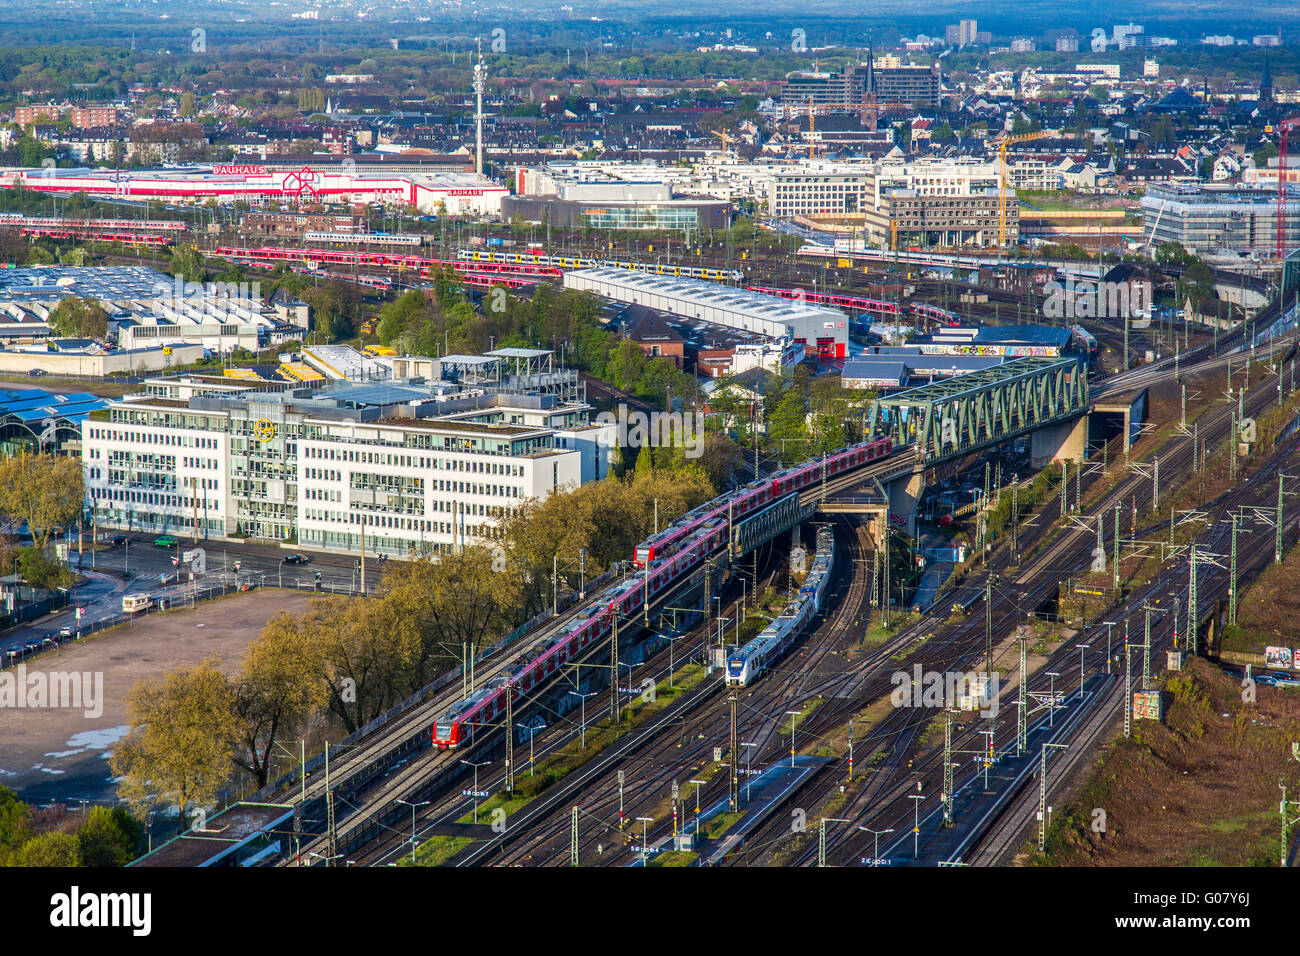 La fiera di Colonia e dalla stazione ferroviaria Deutz in Deutz di Colonia, Germania Foto Stock